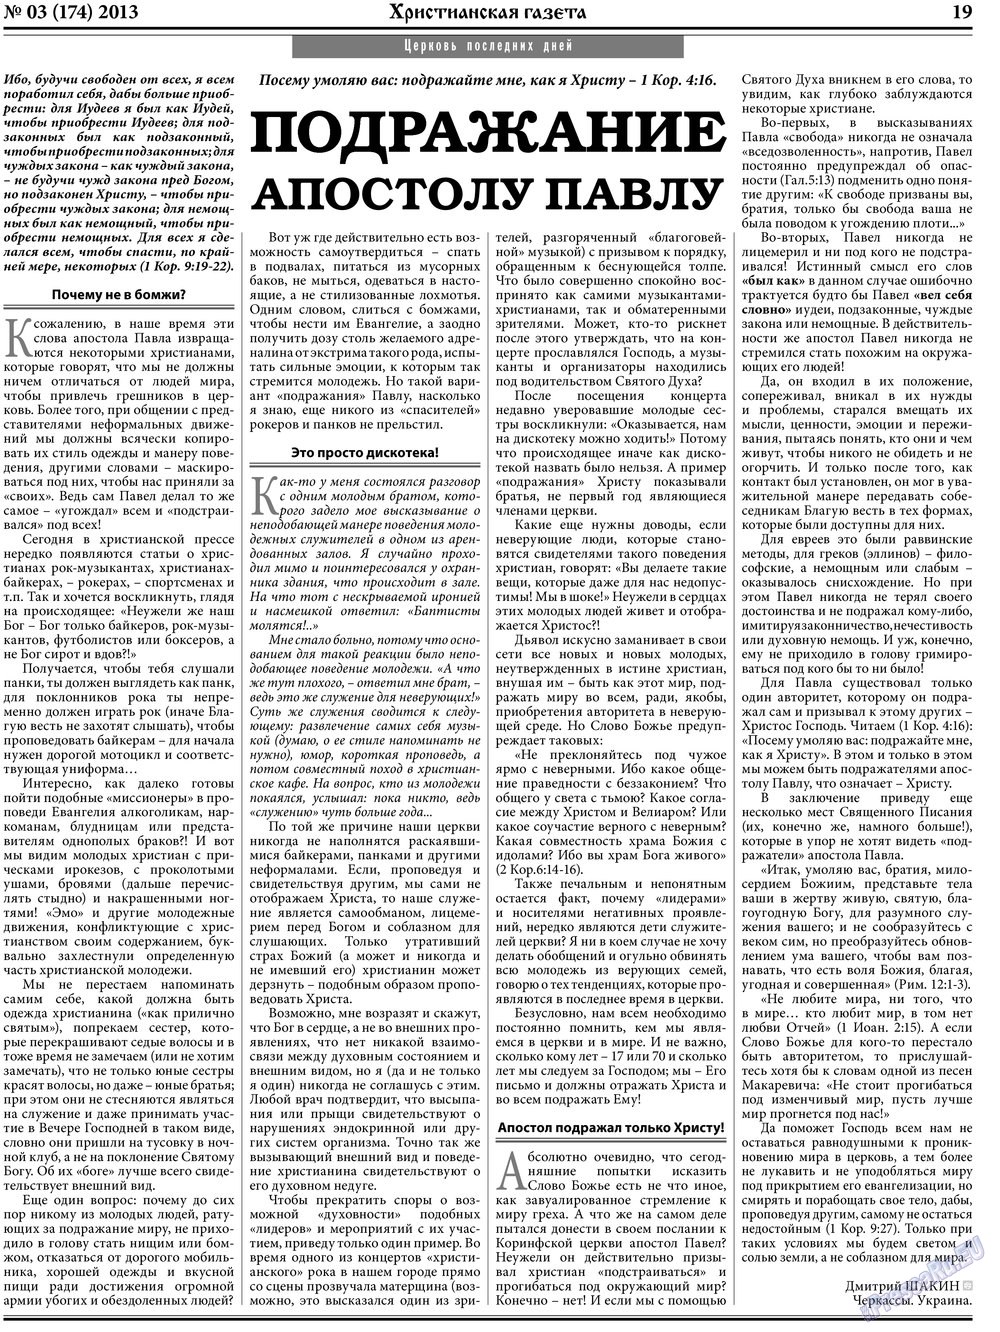 Hristianskaja gazeta (Zeitung). 2013 Jahr, Ausgabe 3, Seite 27